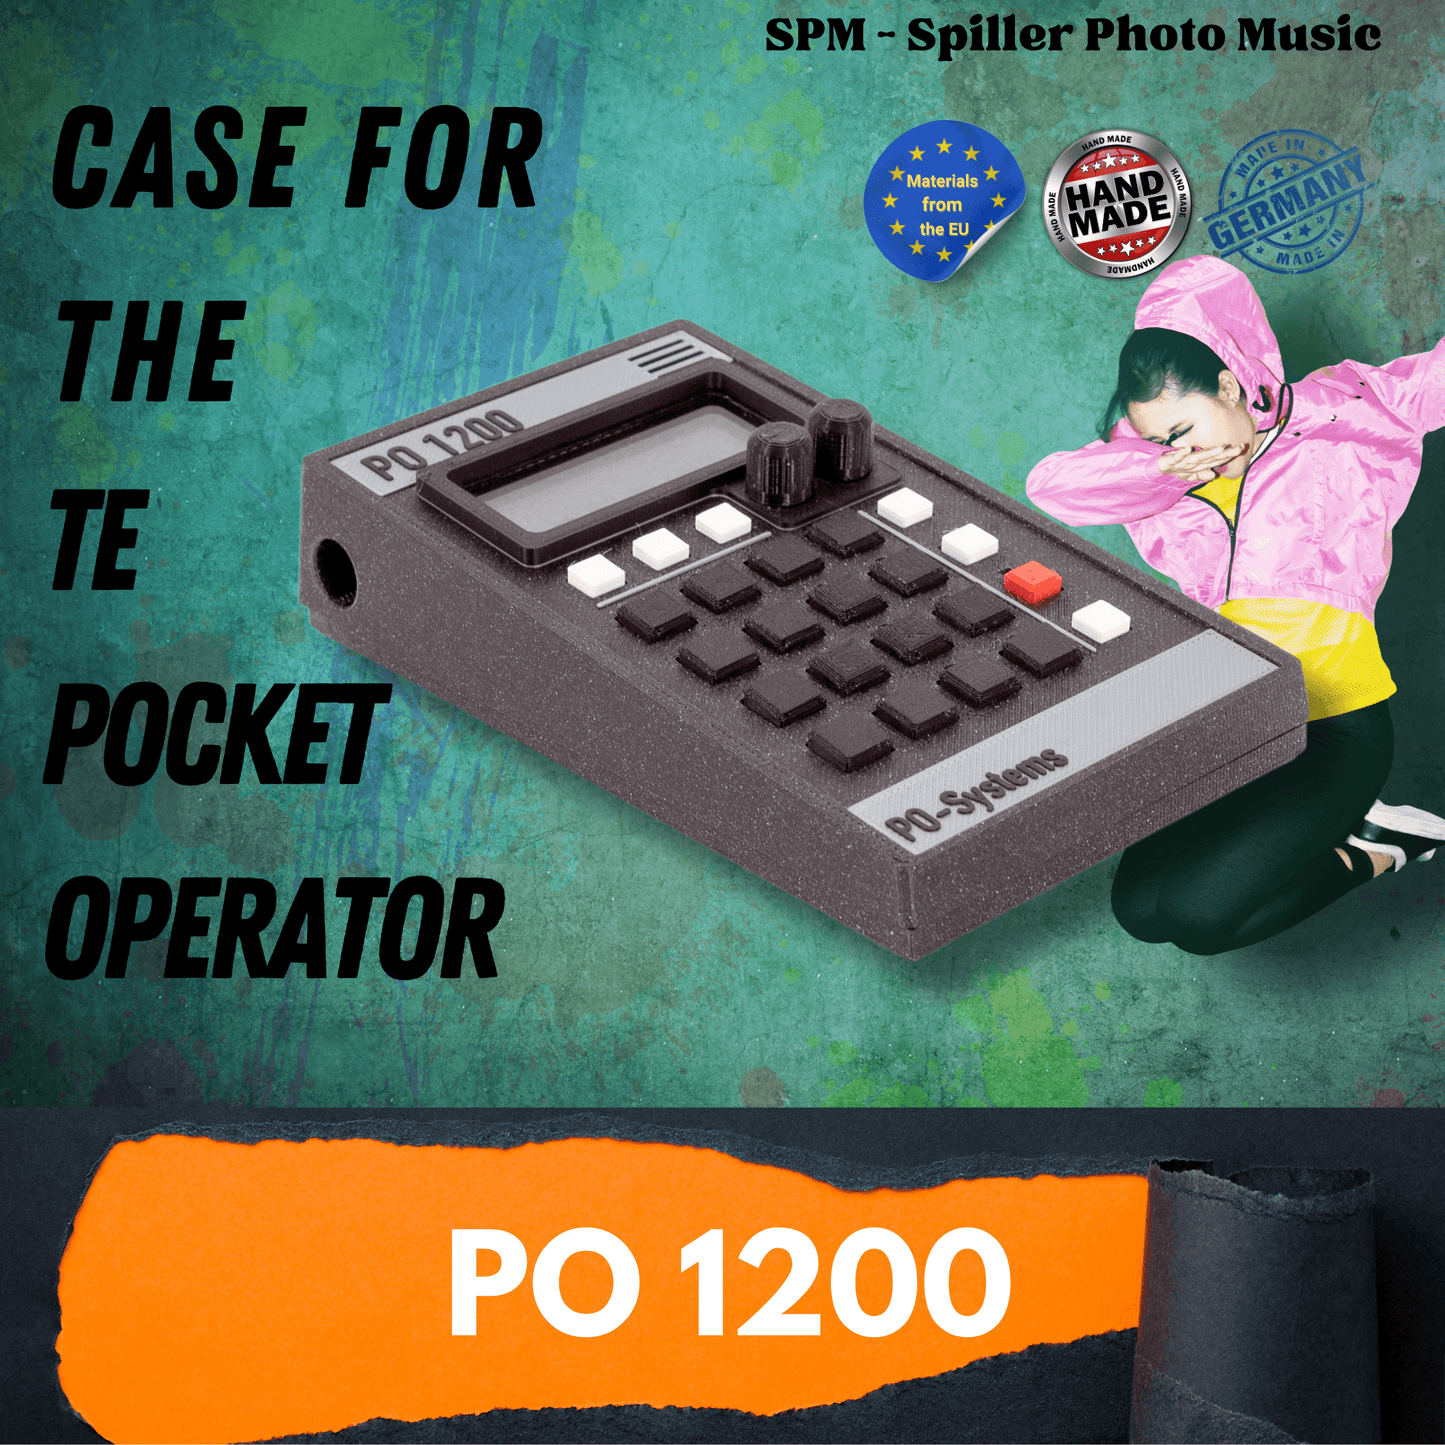 PO 1200 - 3D gedrucktes Gehäuse für den Teenage Engineering Pocket Operator - SPM3x.com - Spillerphoto & Music